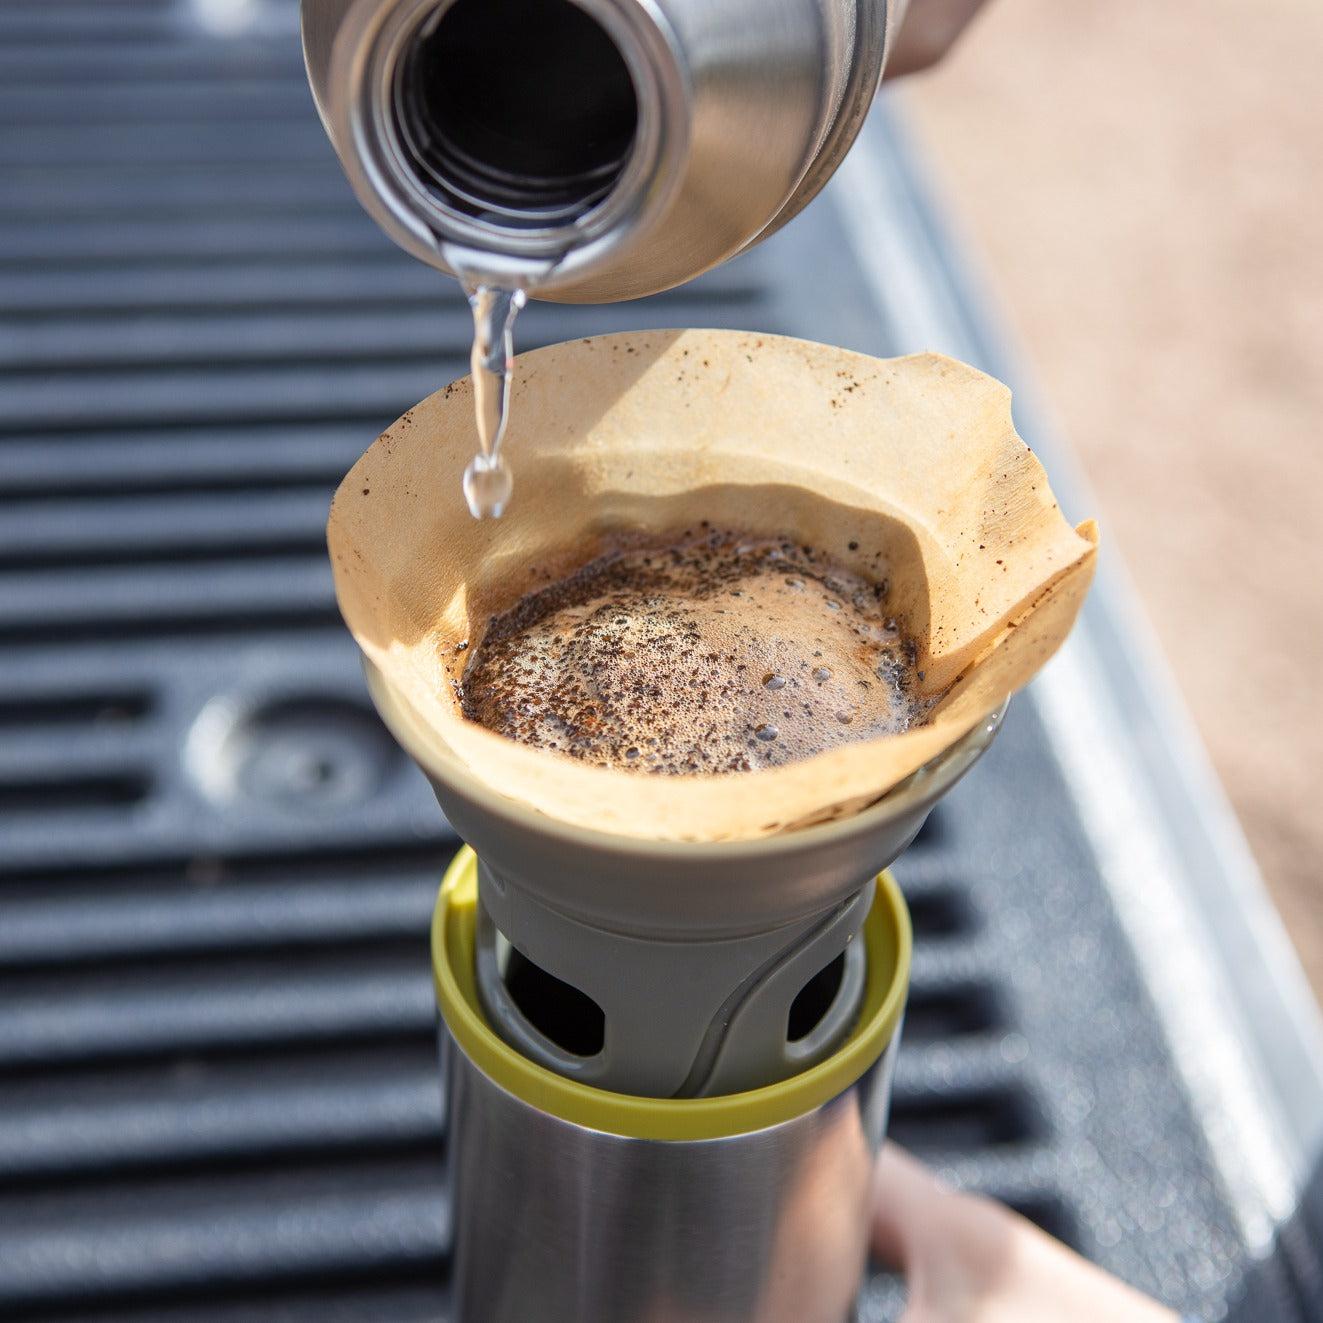 آلة القهوة المقطرة المحمولة بسعة 300 مل CUPPAMOKA Portable Pour Over Coffe Maker من Wacaco - cG9zdDozNjA4NDI=